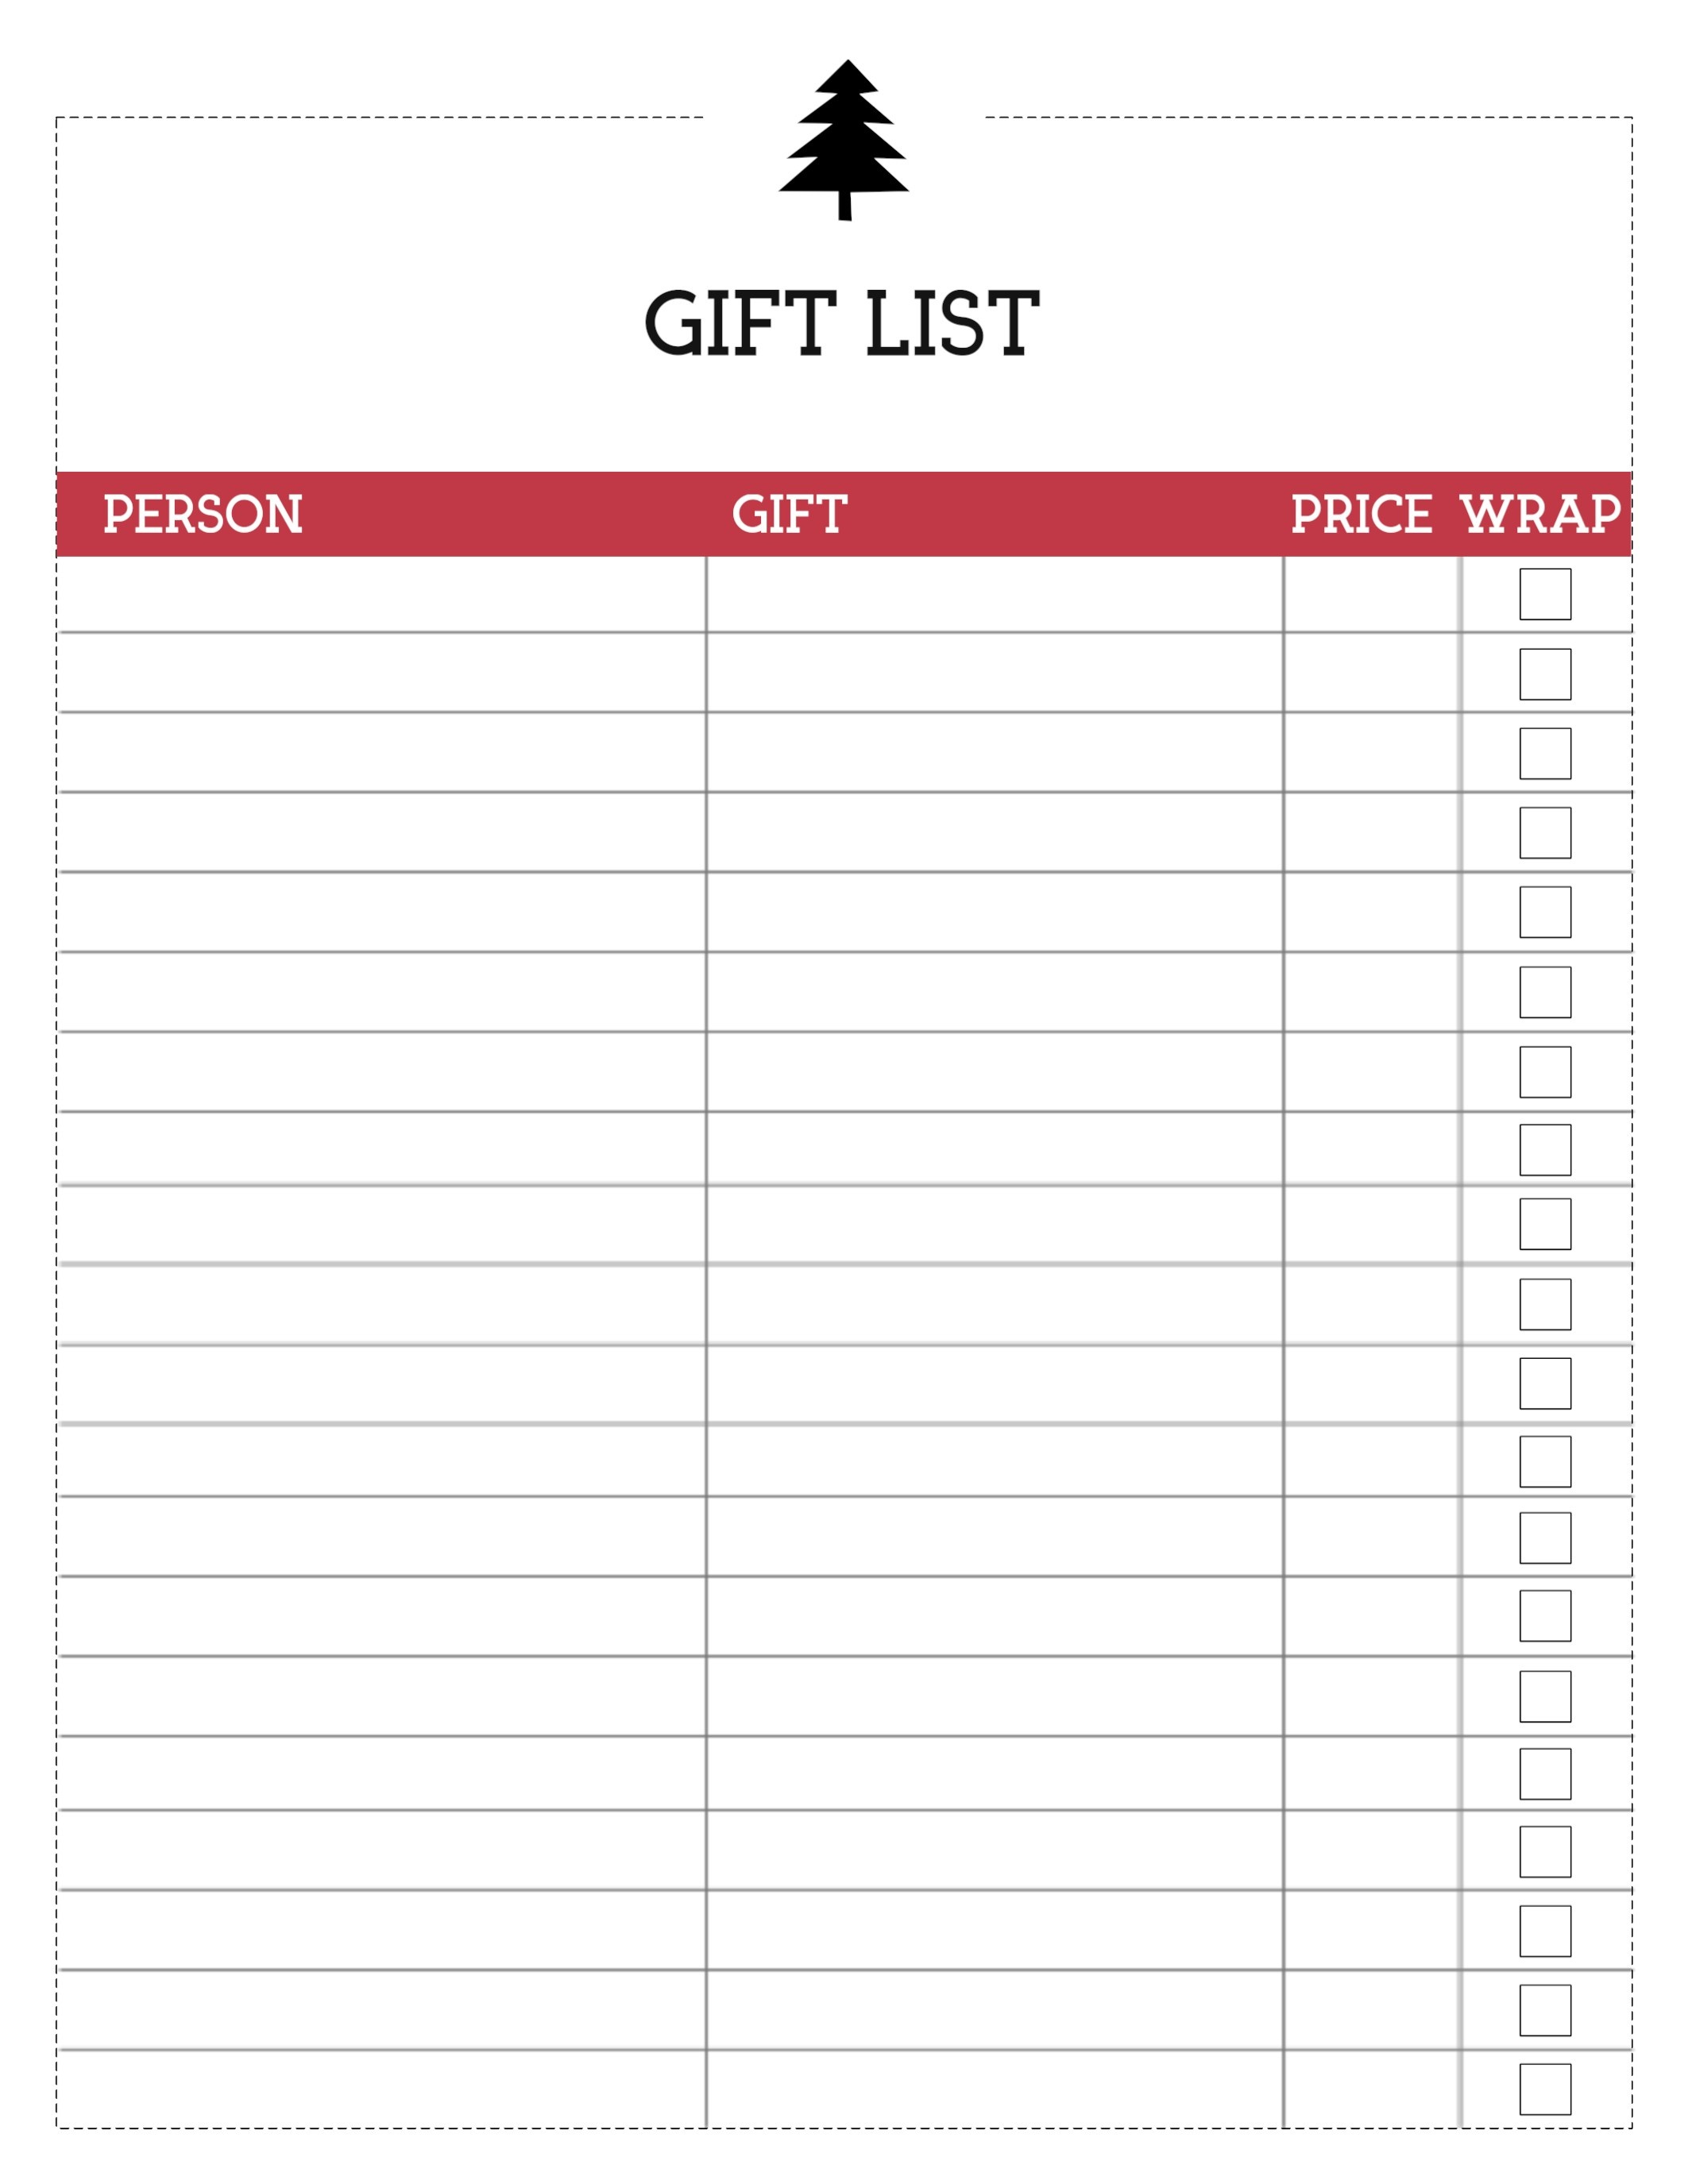 Free Printable Christmas List Template {Gift List} - Paper Trail Design - Free Printable Christmas List